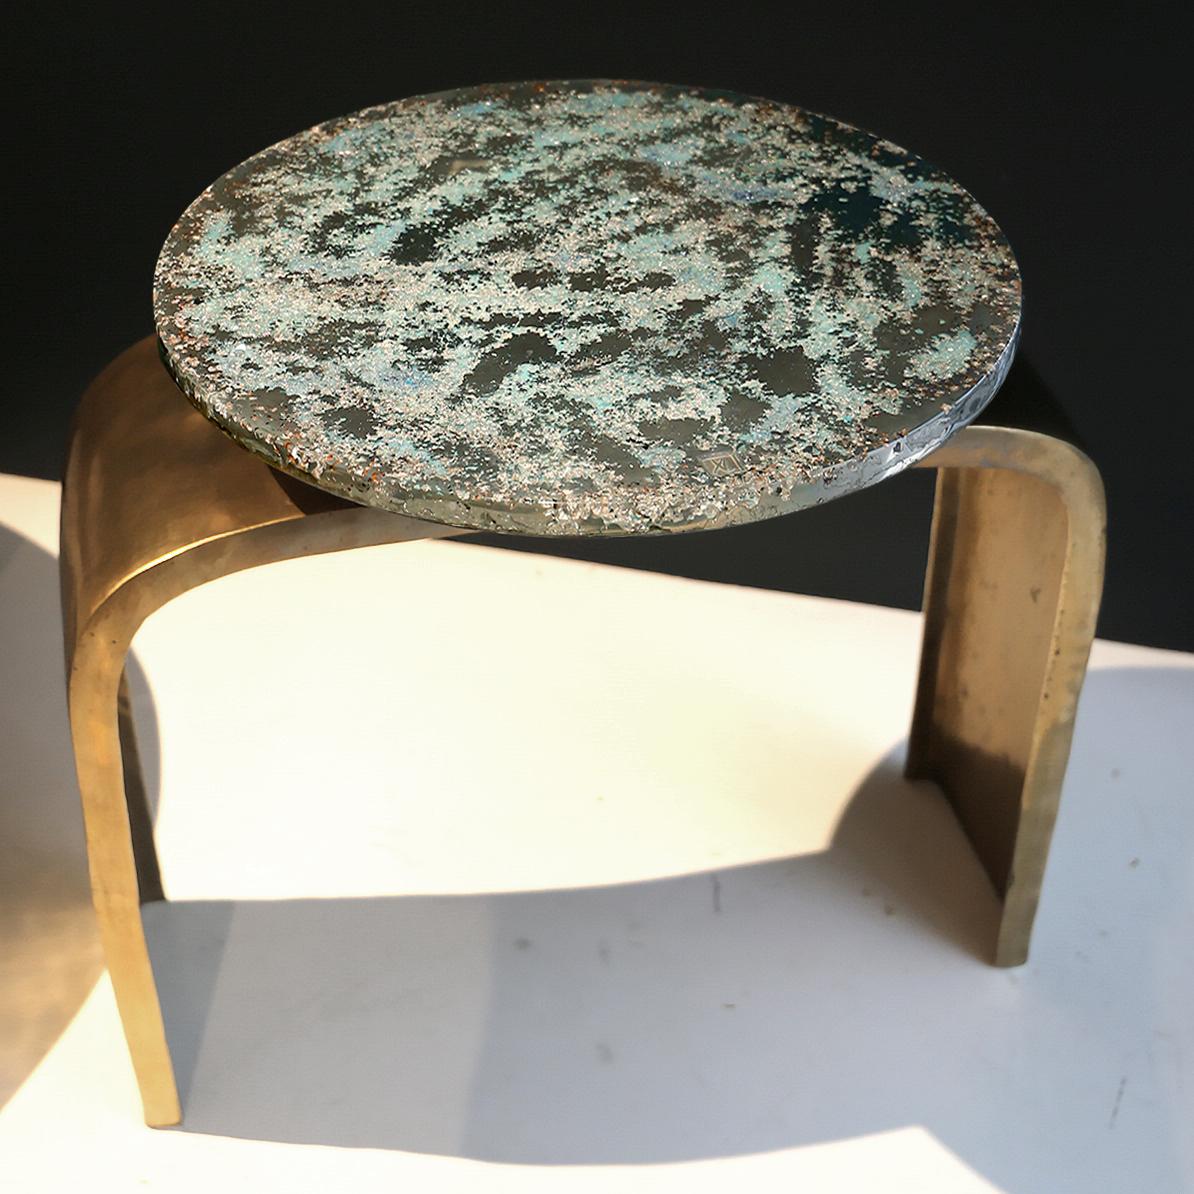 Beine aus Bronze auf Bestellung, mit gewünschter Patina. Top auf Lager: Dieser zeitgenössische Tisch ist ein einzigartiges Stück, das von Xavier Lavergne entworfen wurde und aus geschmolzenem Zinn mit venezianischem Muranoglas besteht, das in Harz